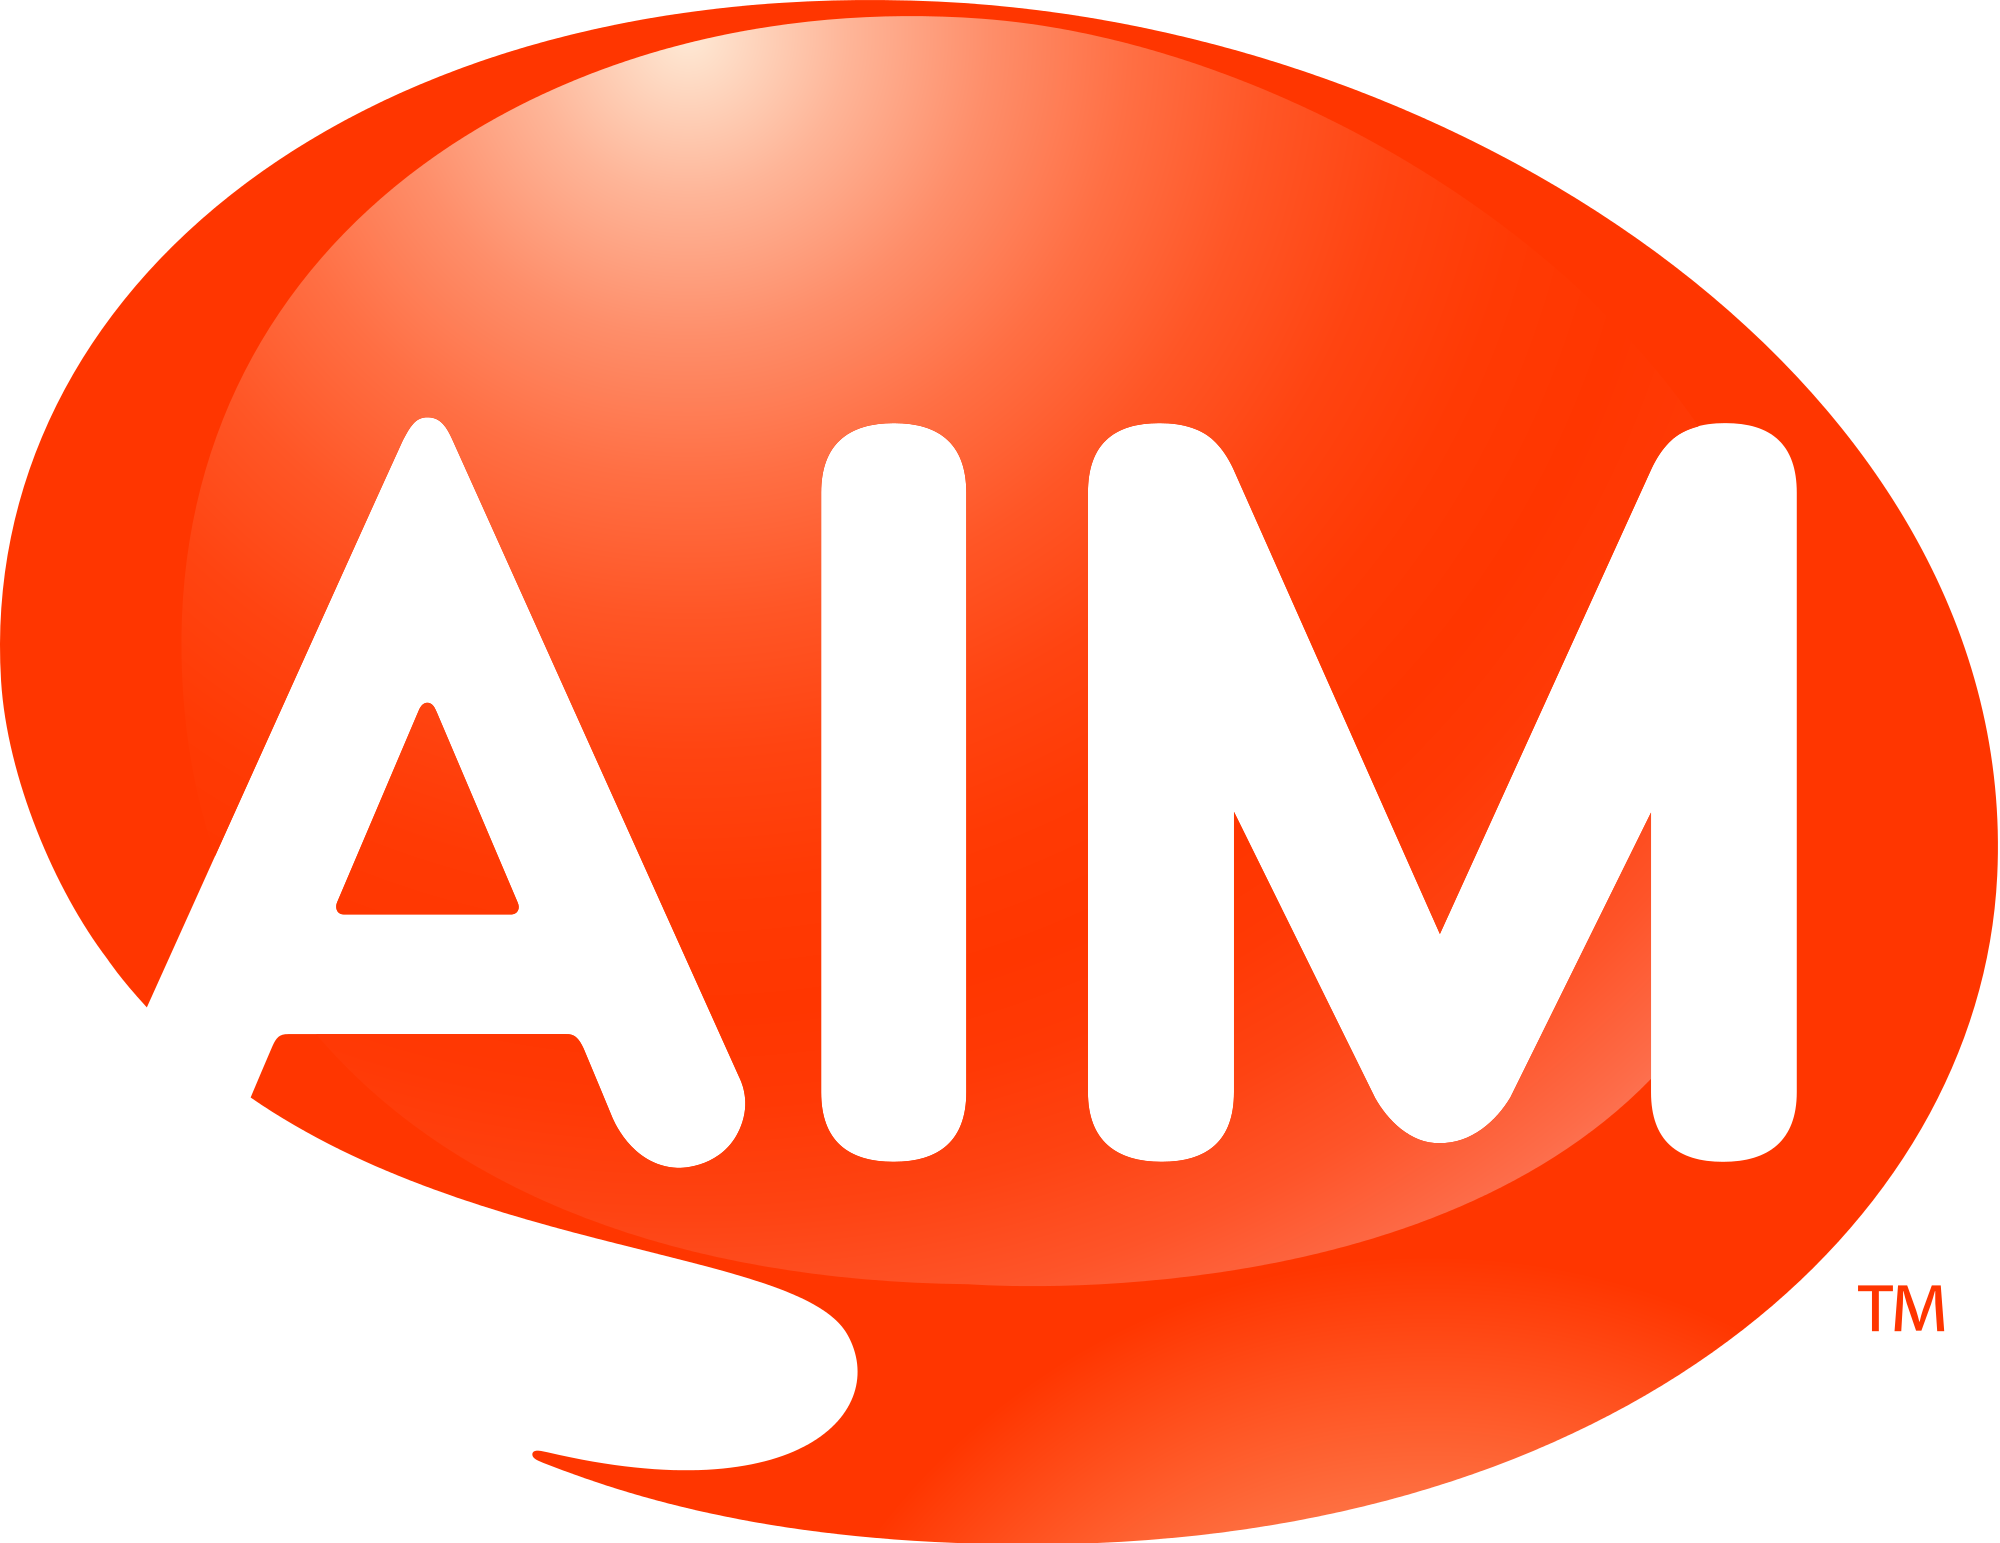 aim